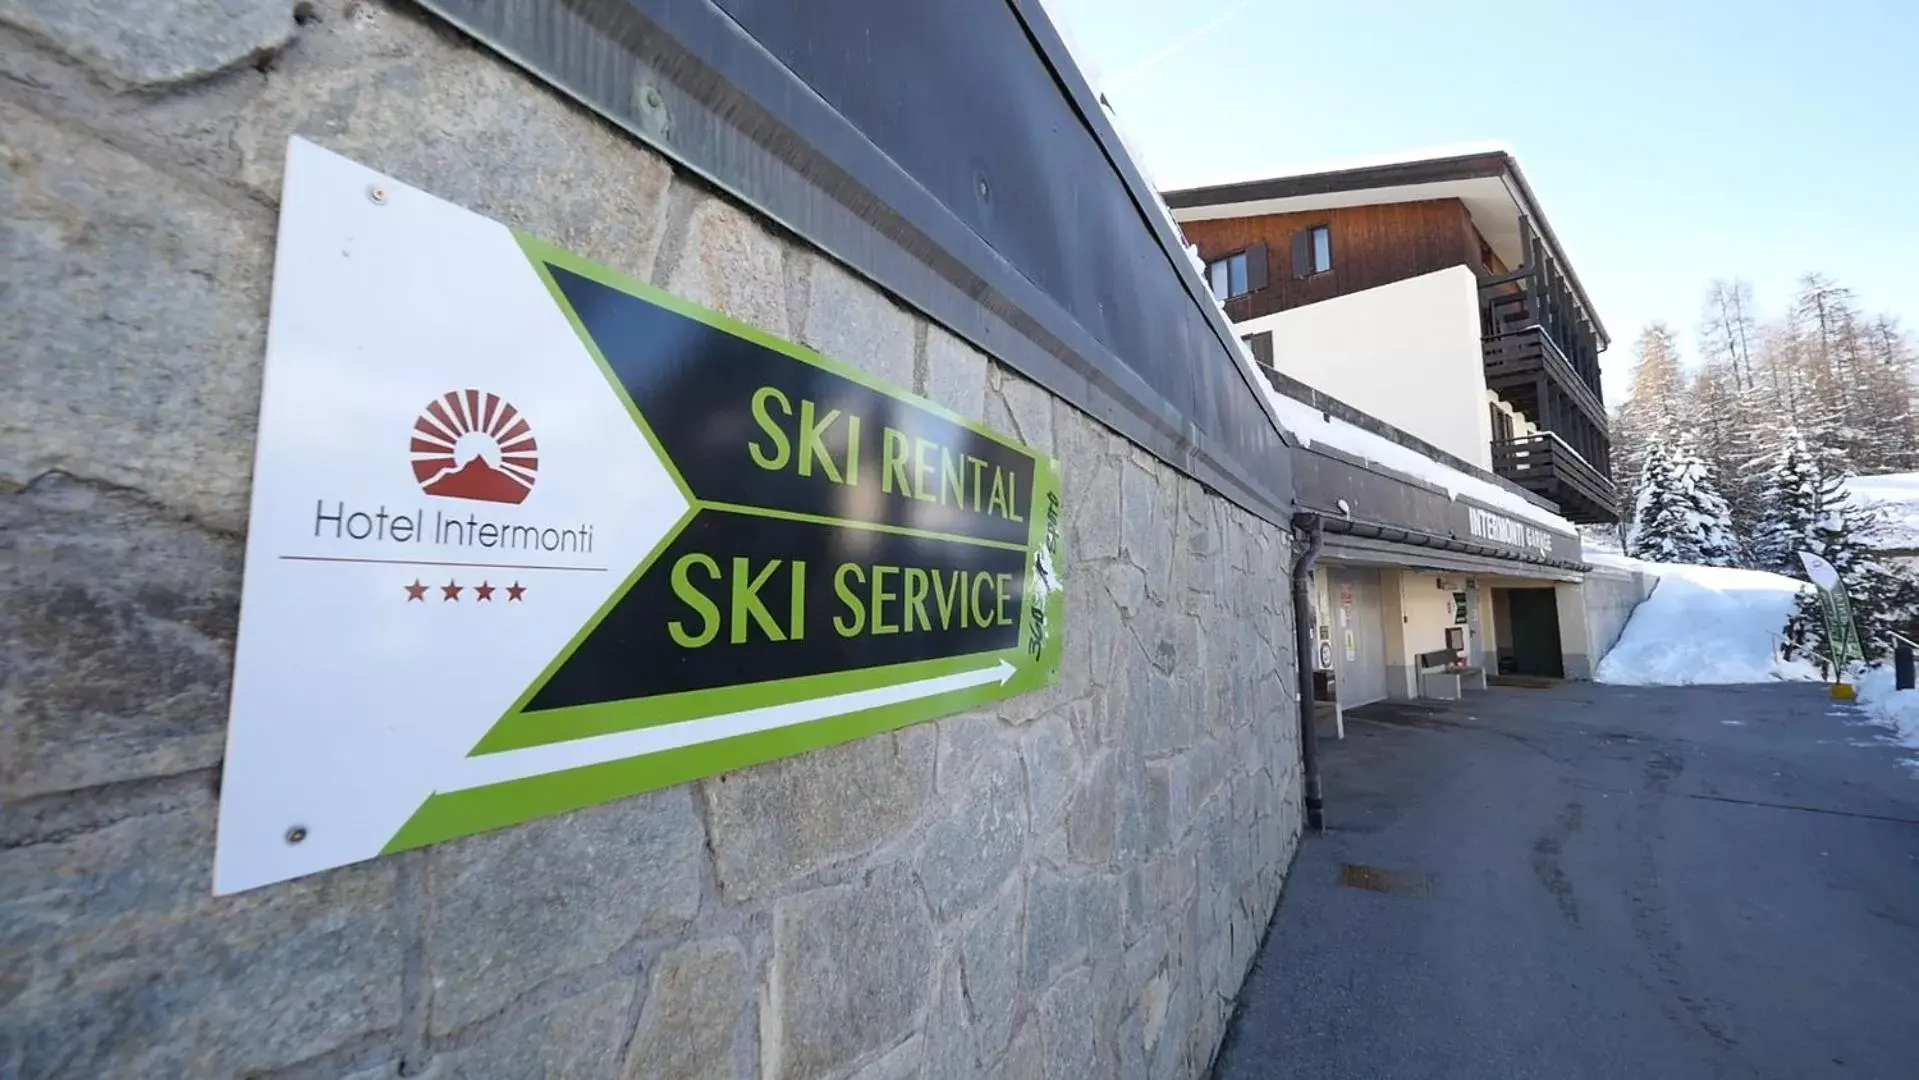 Ski School, Property Building in Hotel Intermonti